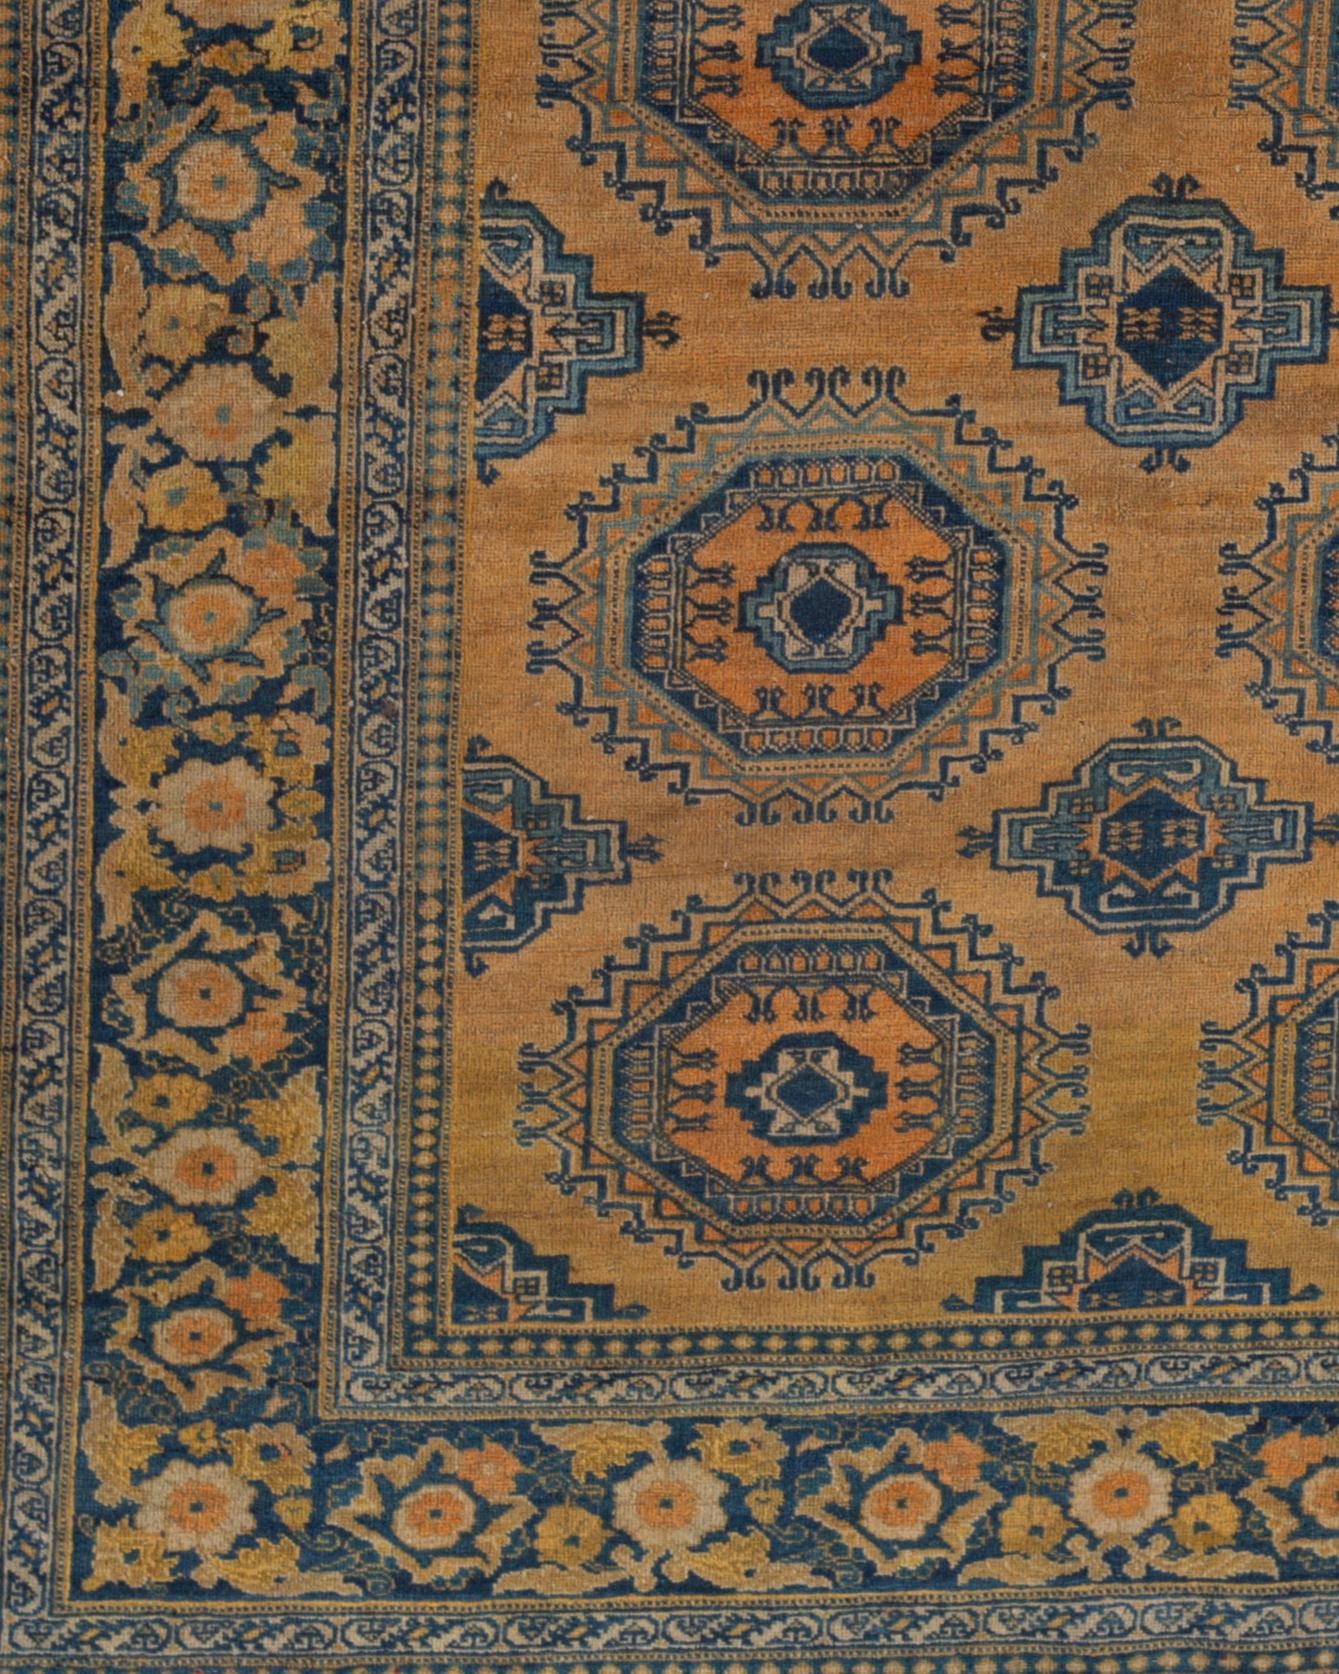 Ancien tapis persan de Tabriz, vers 1890. Le renouveau du tapis persan a commencé à Tabriz vers 1870 et les marchands de tapis de Tabriz ont joué un rôle déterminant dans la renaissance de l'artisanat dans tout l'Iran. Ce bel exemple de tapis